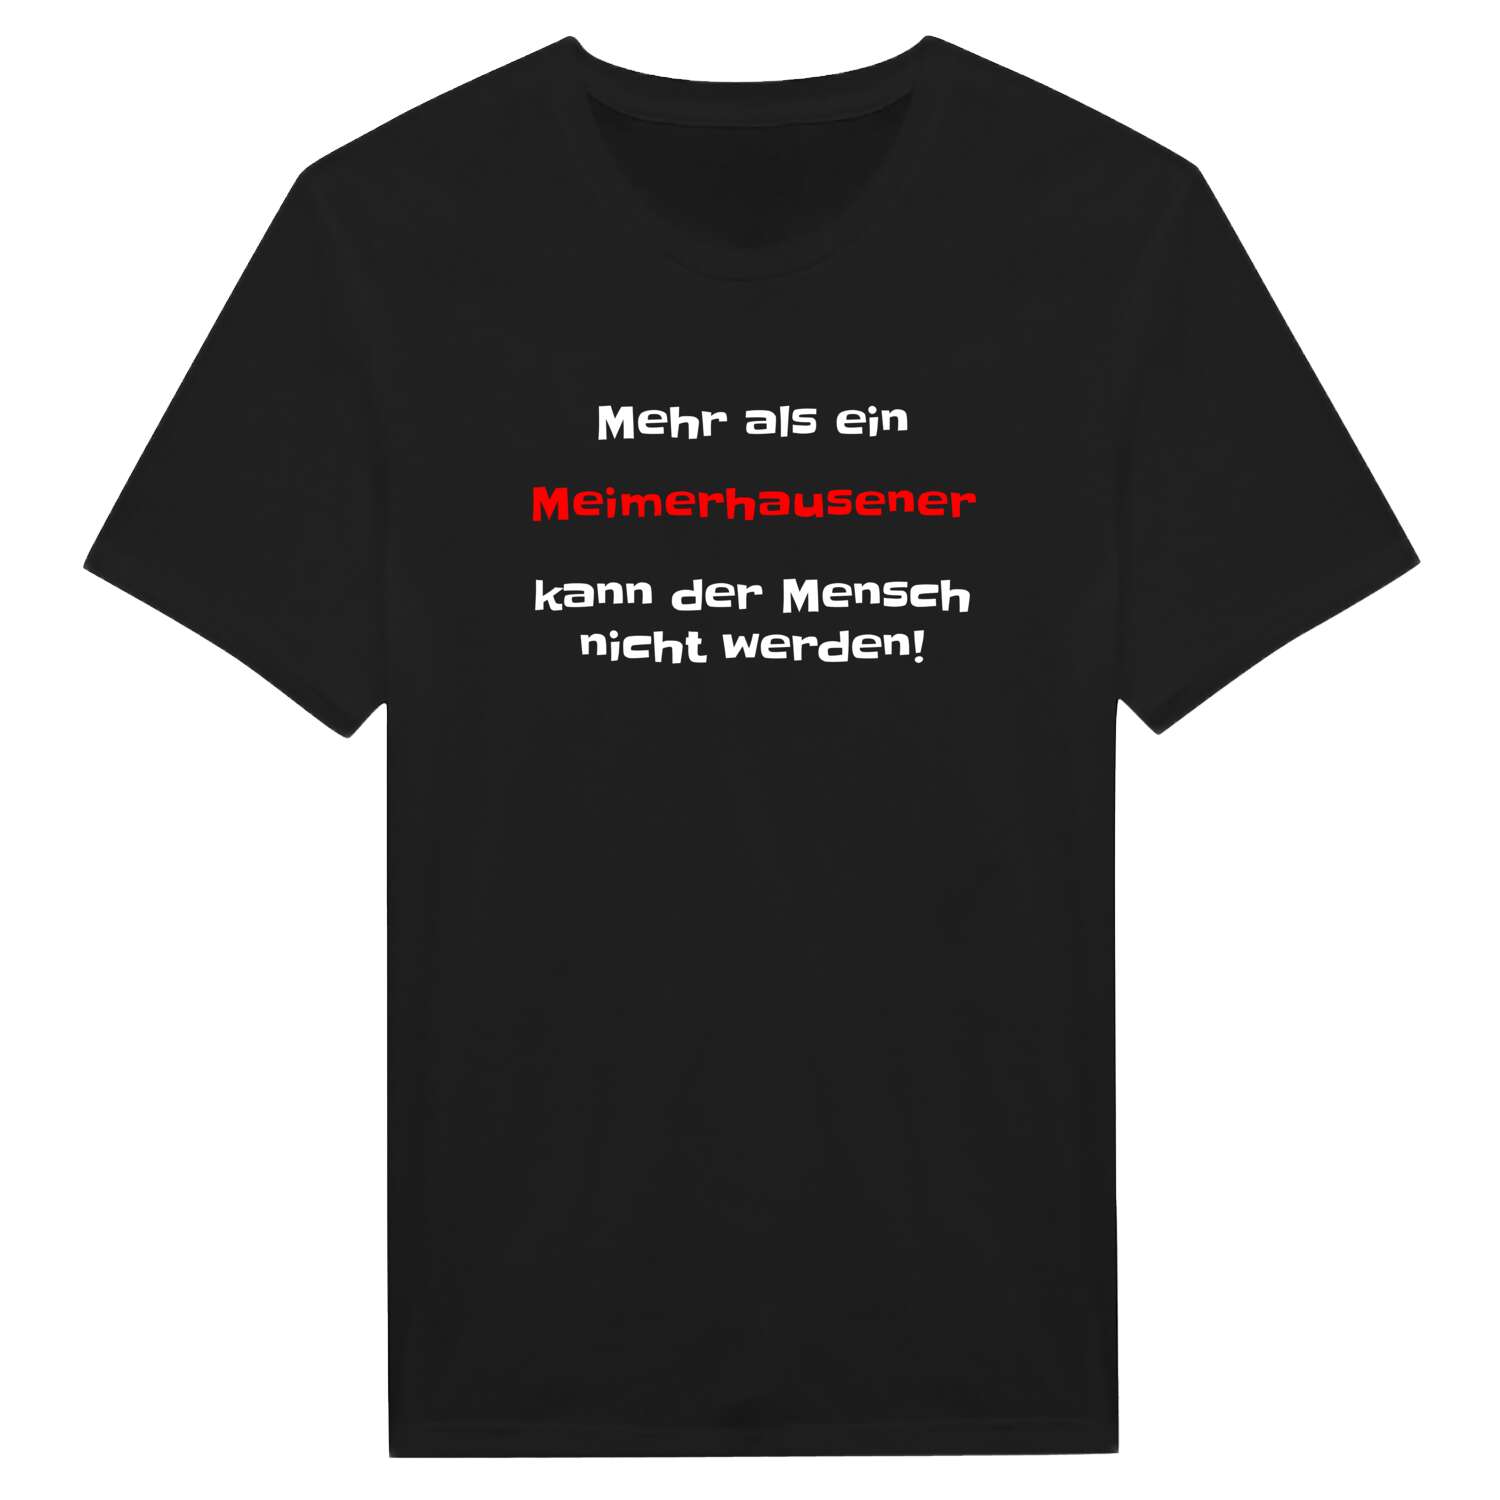 Meimerhausen T-Shirt »Mehr als ein«